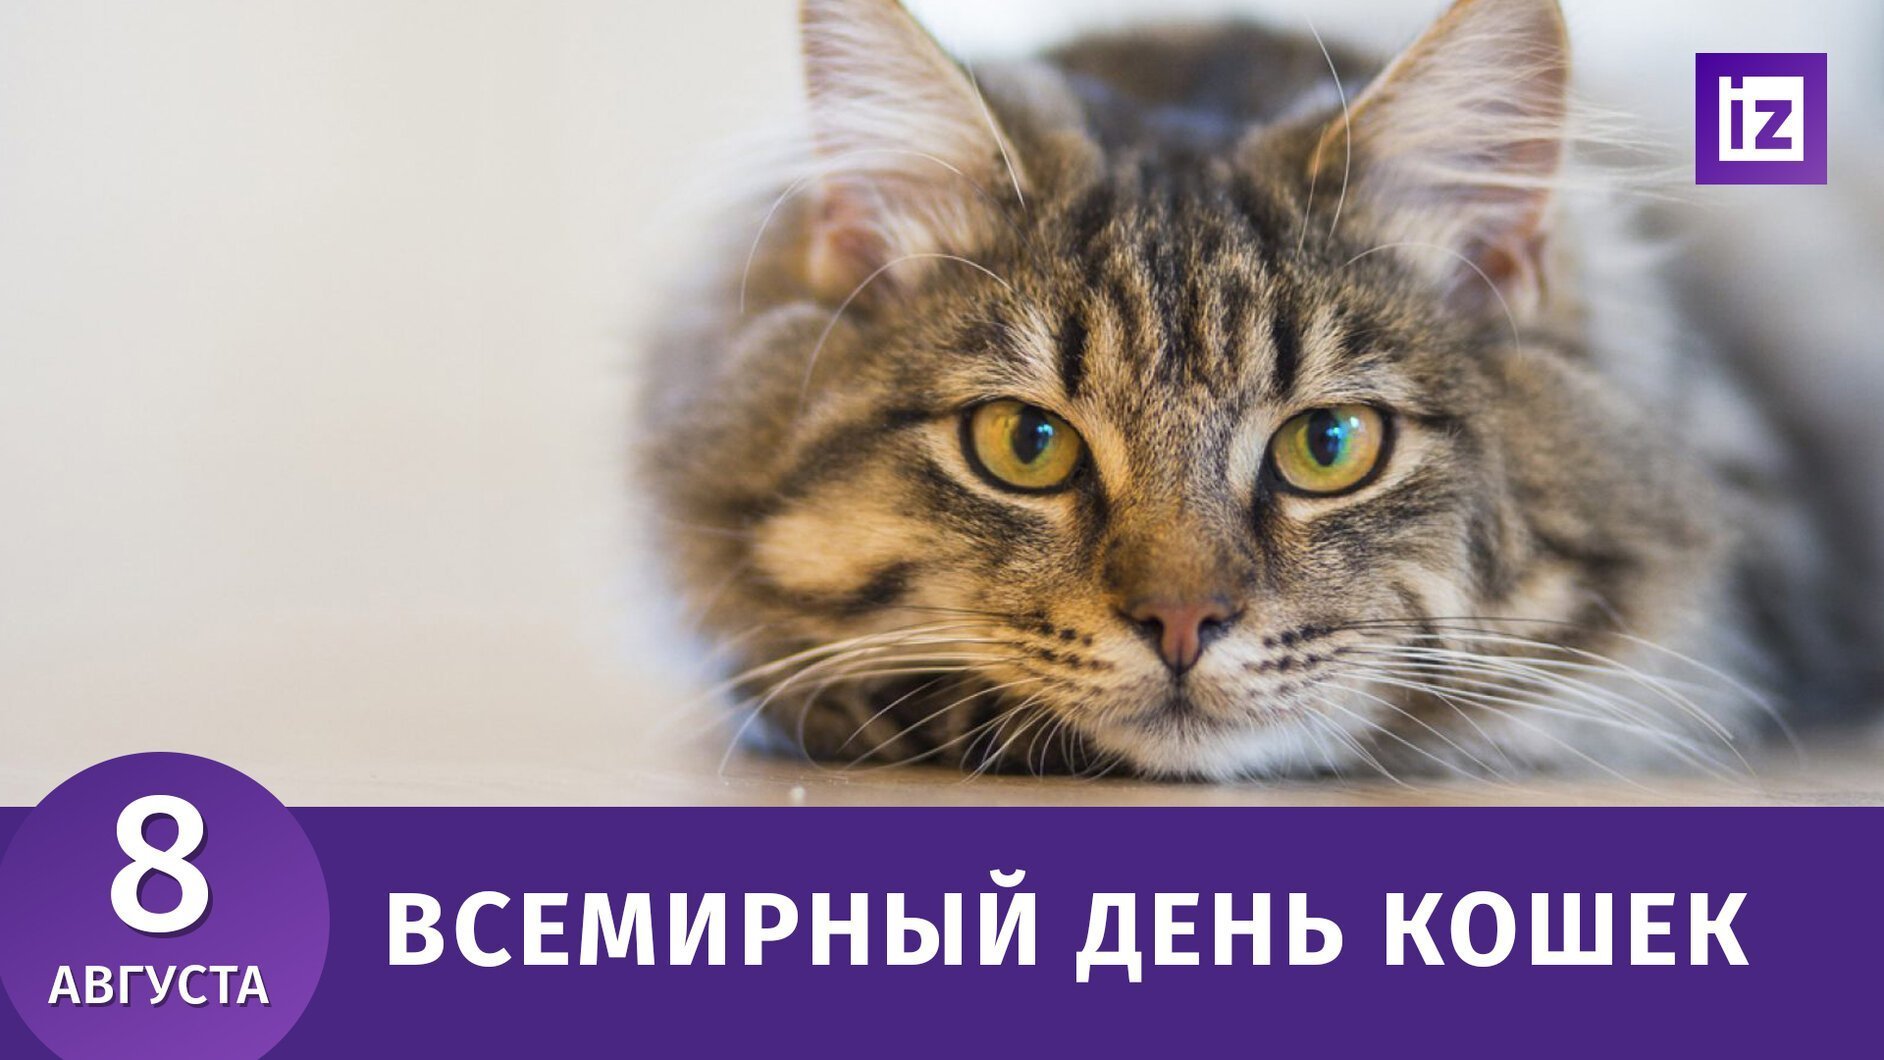 Кошки сценарий мероприятия. Всемирный день кошек. Всемирный день кошек 8 августа. Всемирный день кошек 2021 8 августа.